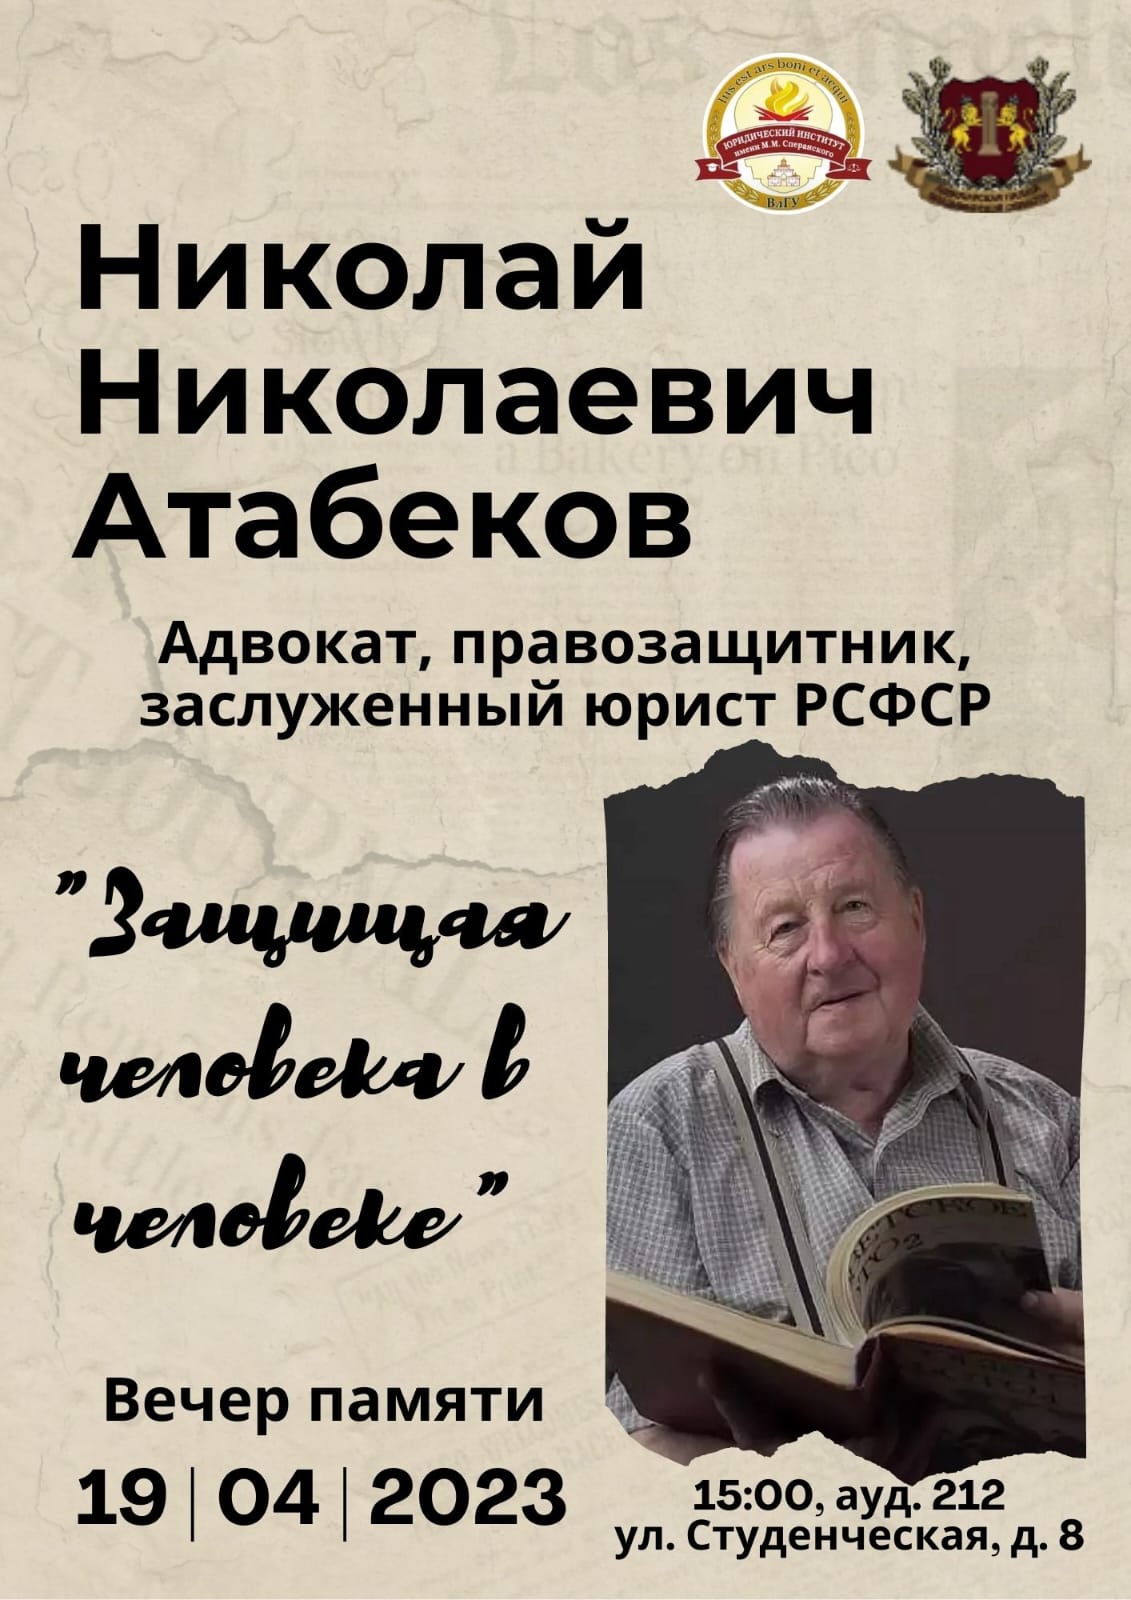 19 апреля состоится вечер памяти, посвященный адвокату Атабекову Н.Н.